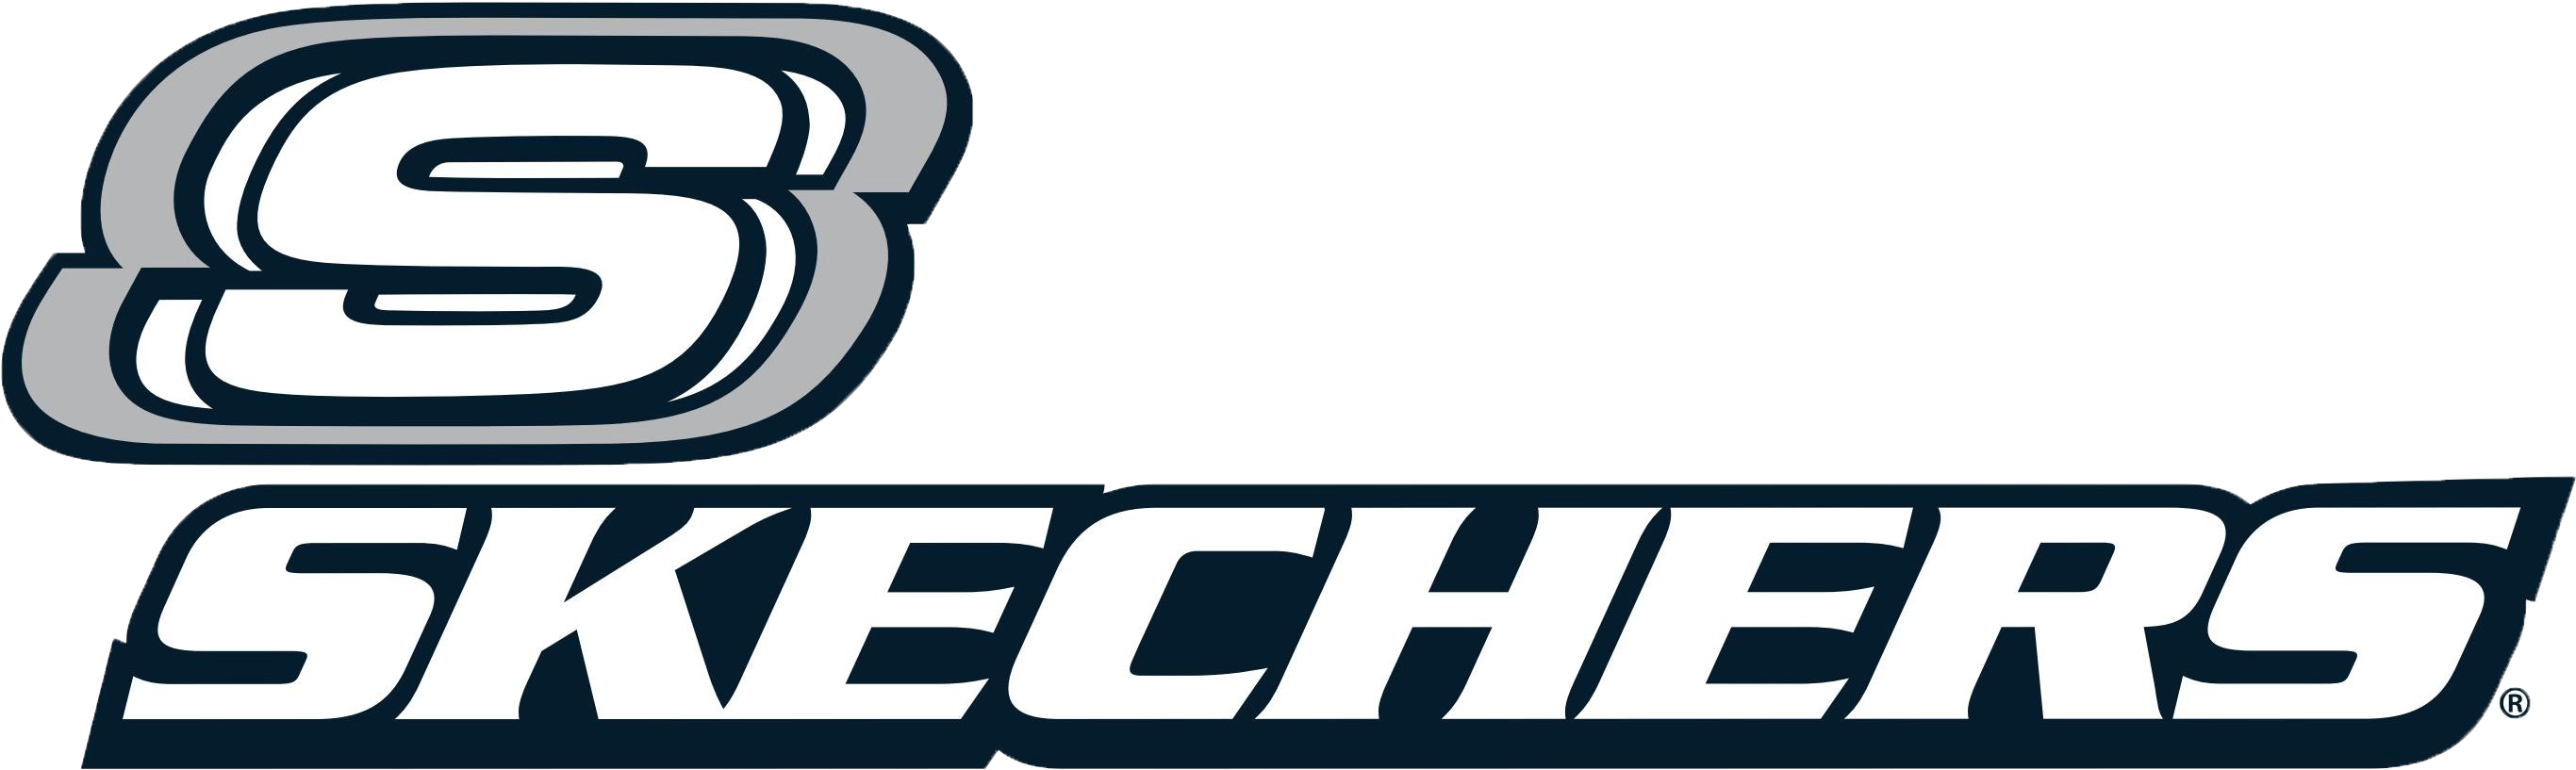 Scechers Logo - HD Skechers-logo Copy - Skechers , Free Unlimited Download #891578 ...